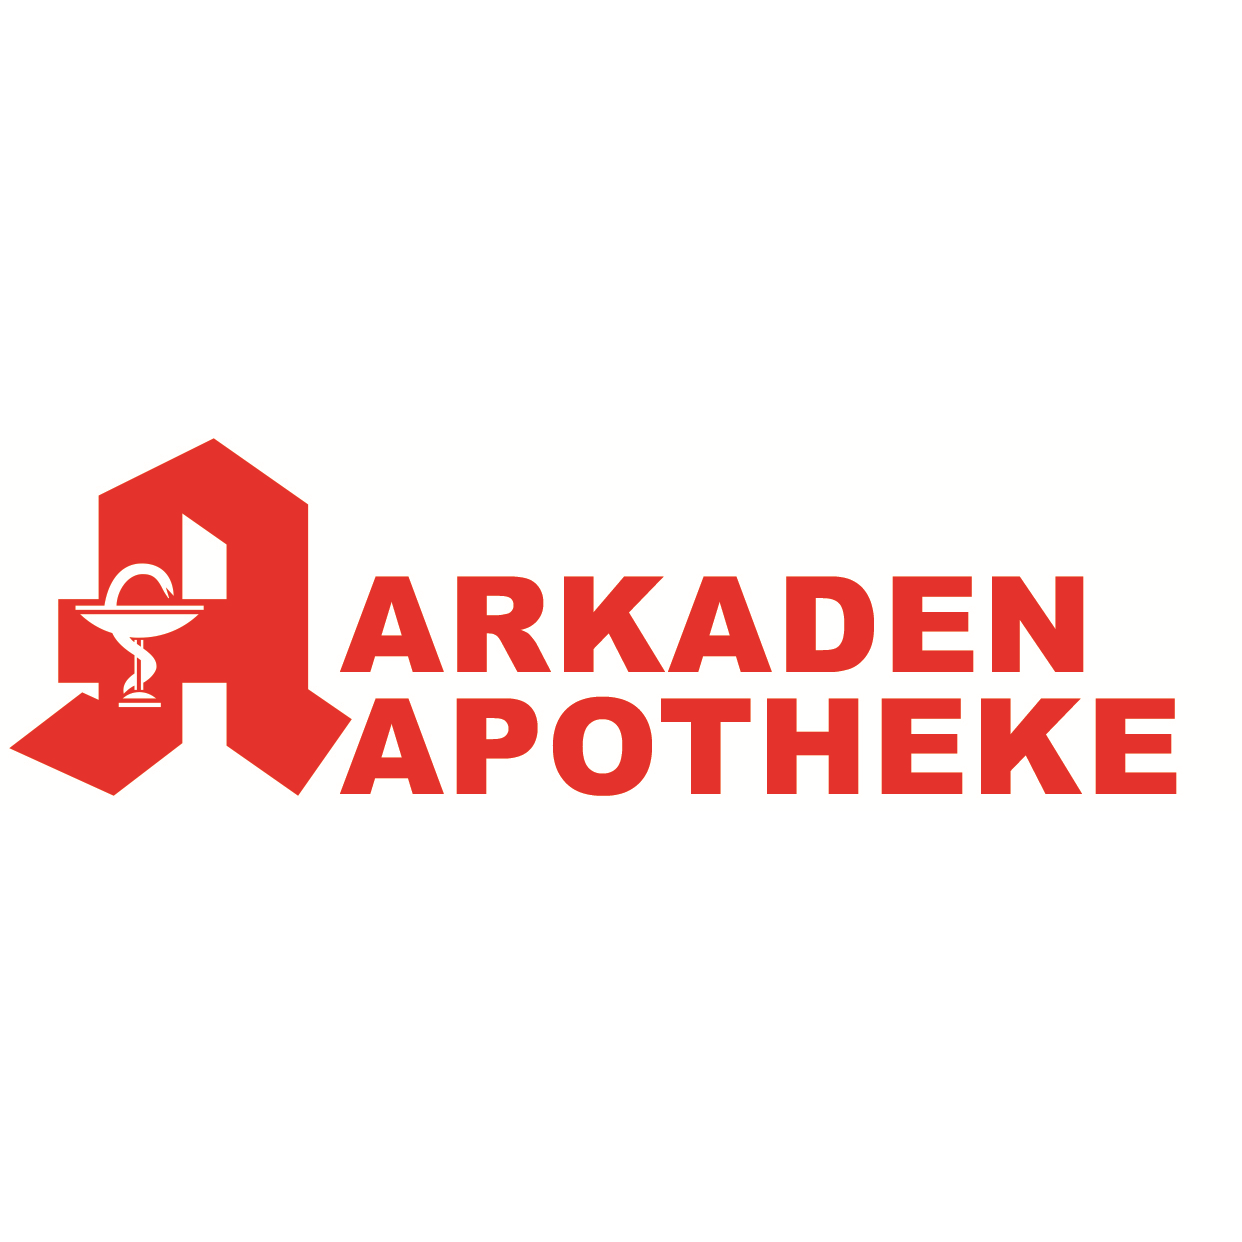 Arkaden-Apotheke in Duisburg - Logo